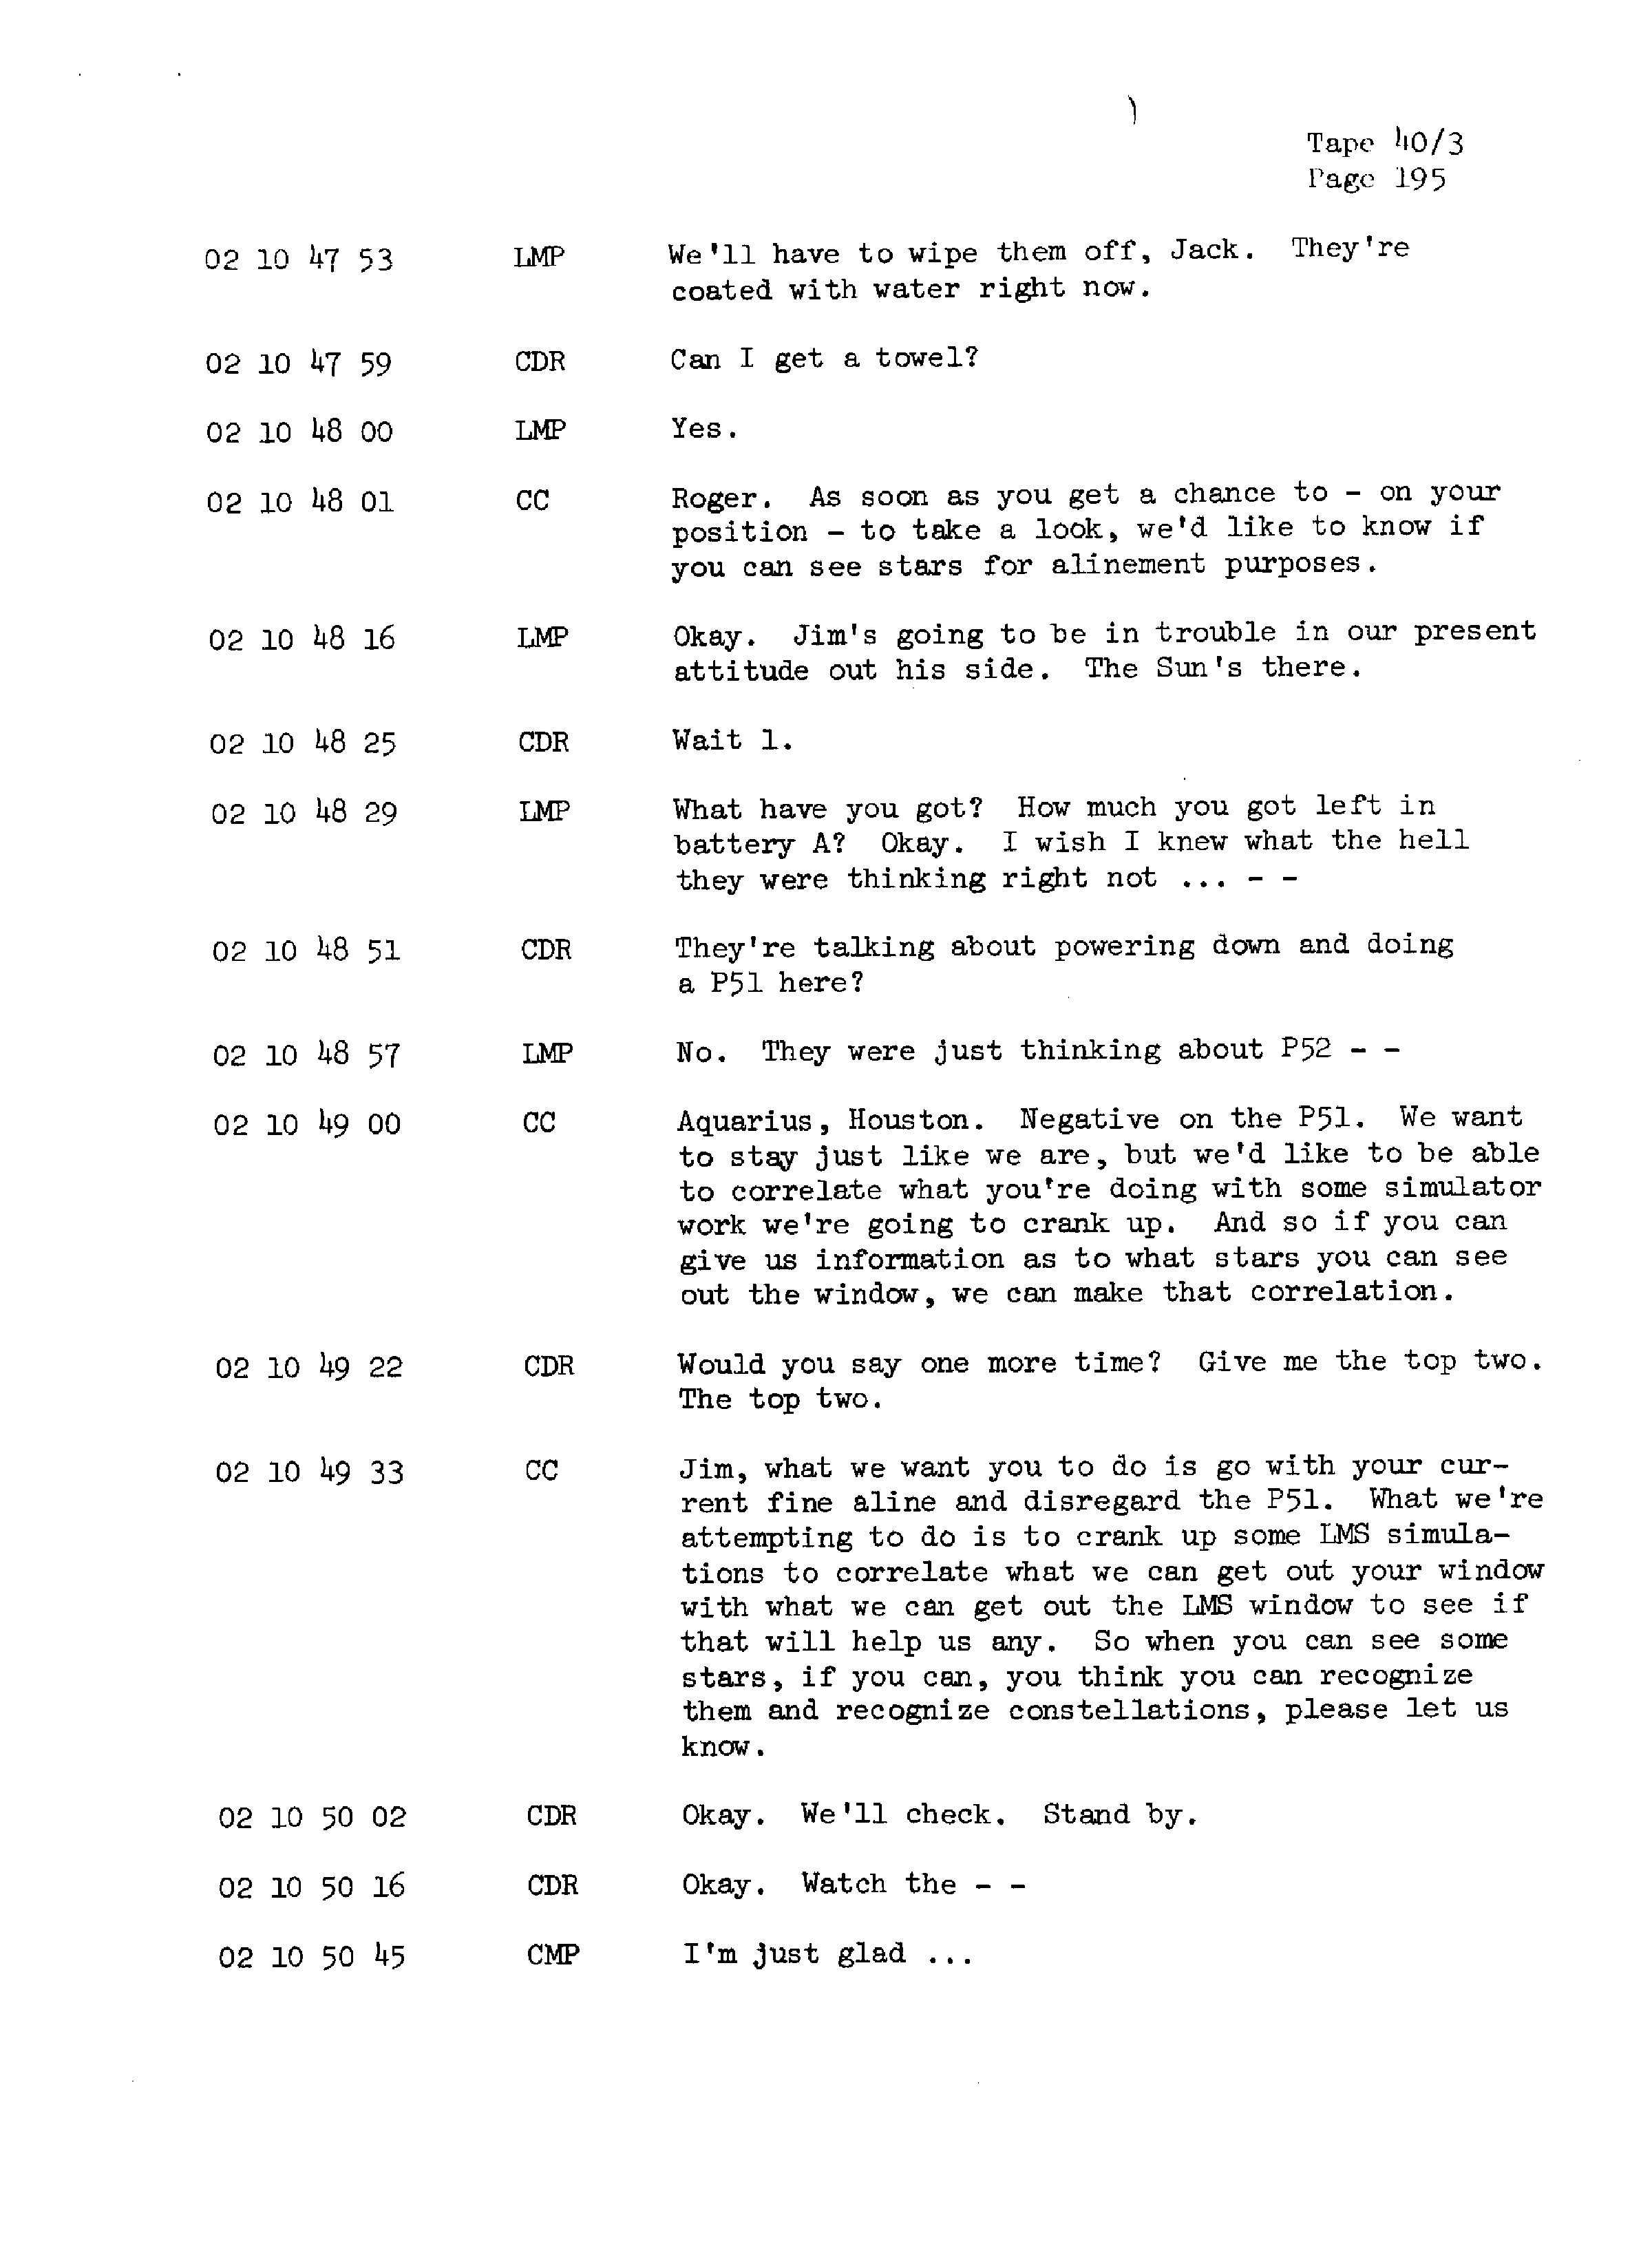 Page 202 of Apollo 13’s original transcript